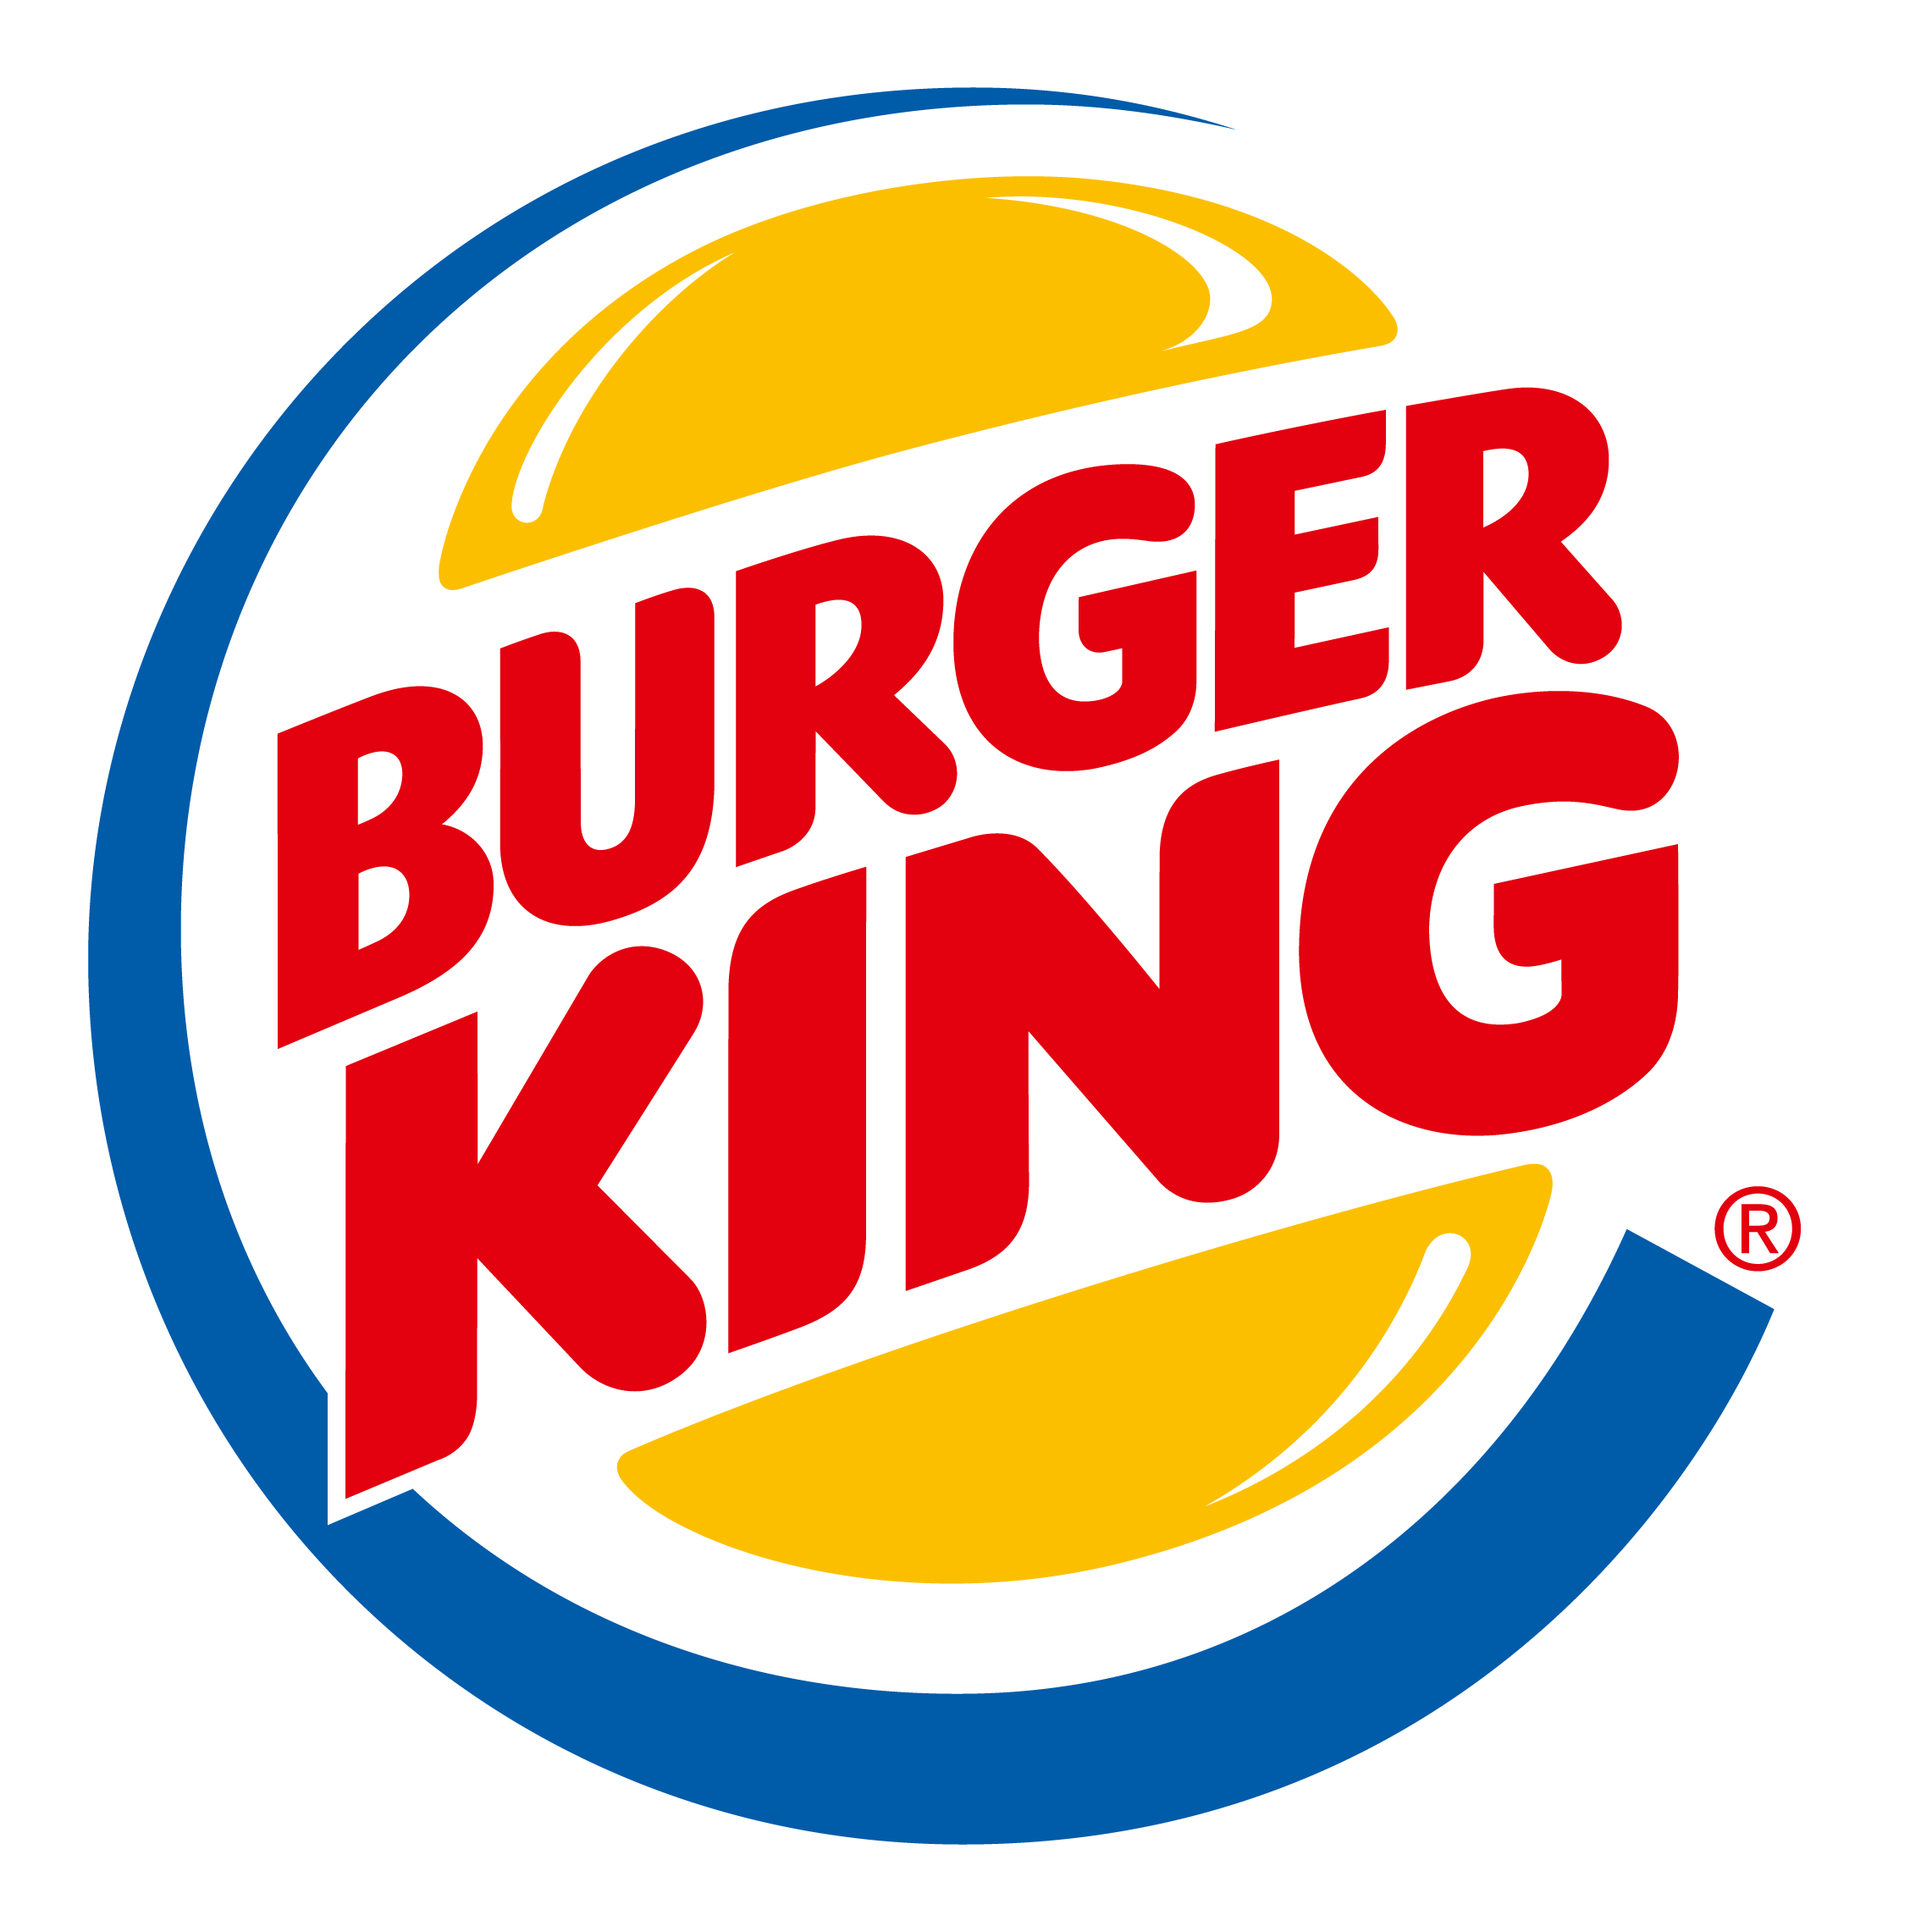 Бургер Кинг логотип PNG